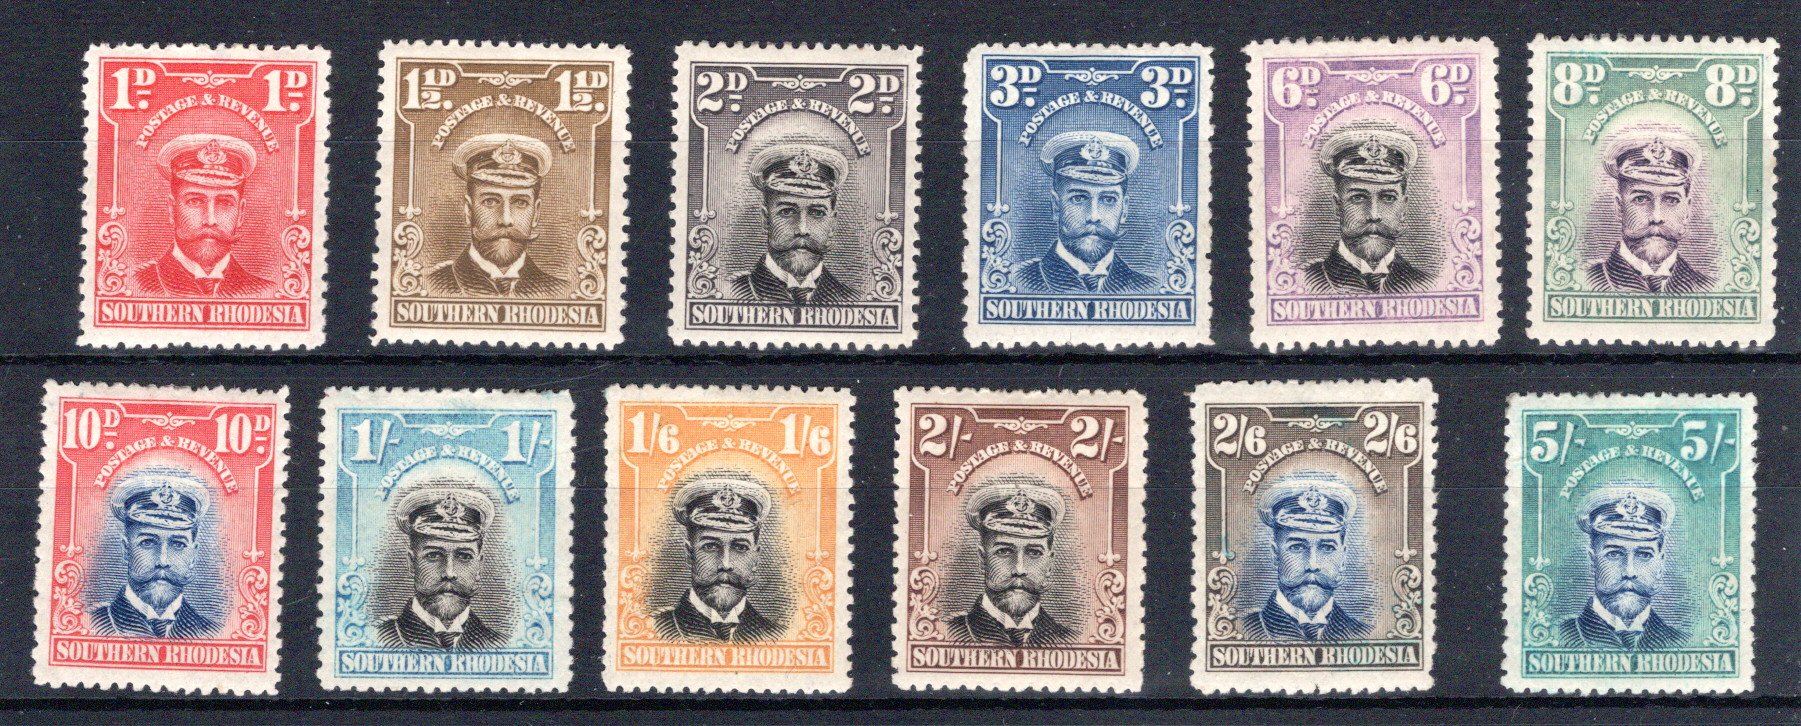 Lot 389 - British Commonwealth southern rhodesia -  Georg Bühler Briefmarken Auktionen GmbH Georg Bühler 336 auction